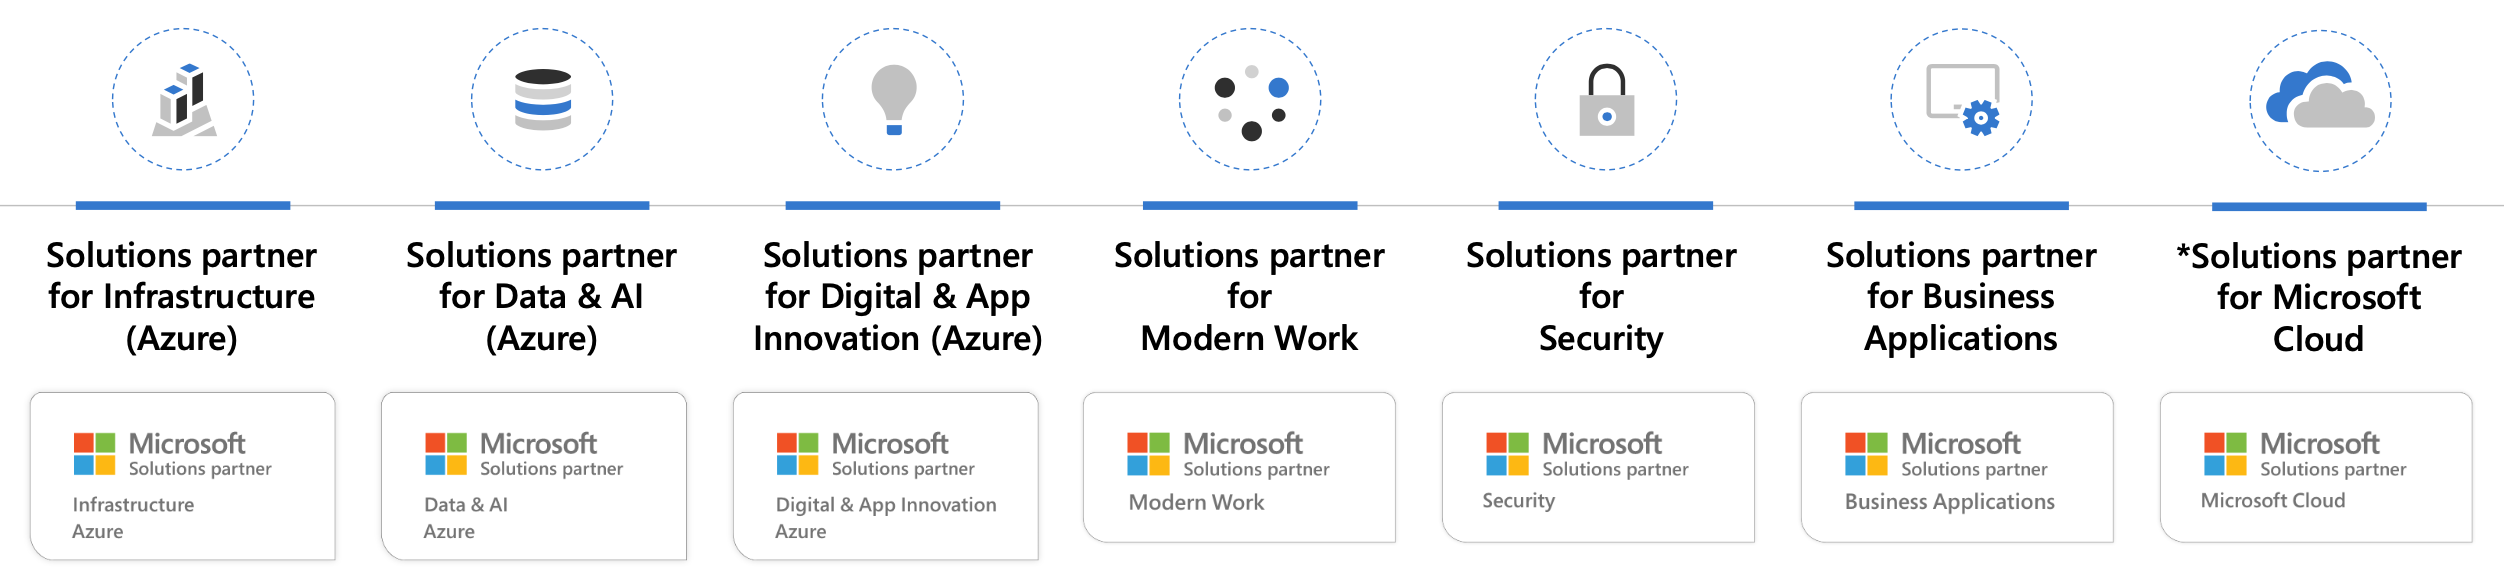 Microsoft Cloud Partner Program: drei Lösungspartner- und drei Azure-Badges sowie ein übergreifendes Cloud-Badge